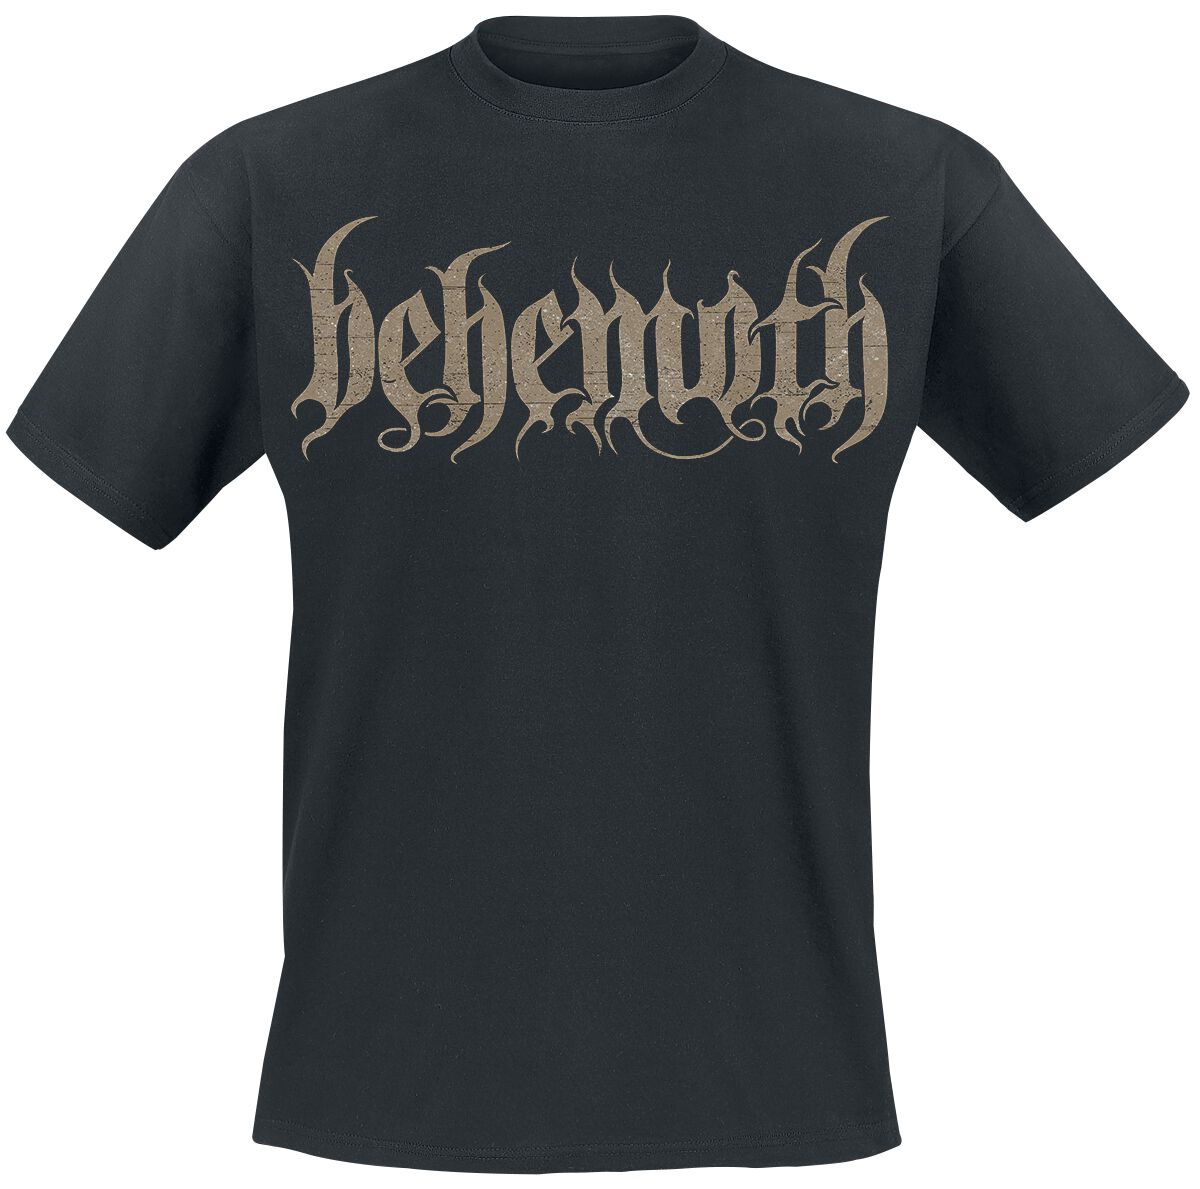 Behemoth T-Shirt - Opvs contra natvram - S bis XXL - für Männer - Größe M - schwarz  - EMP exklusives Merchandise!